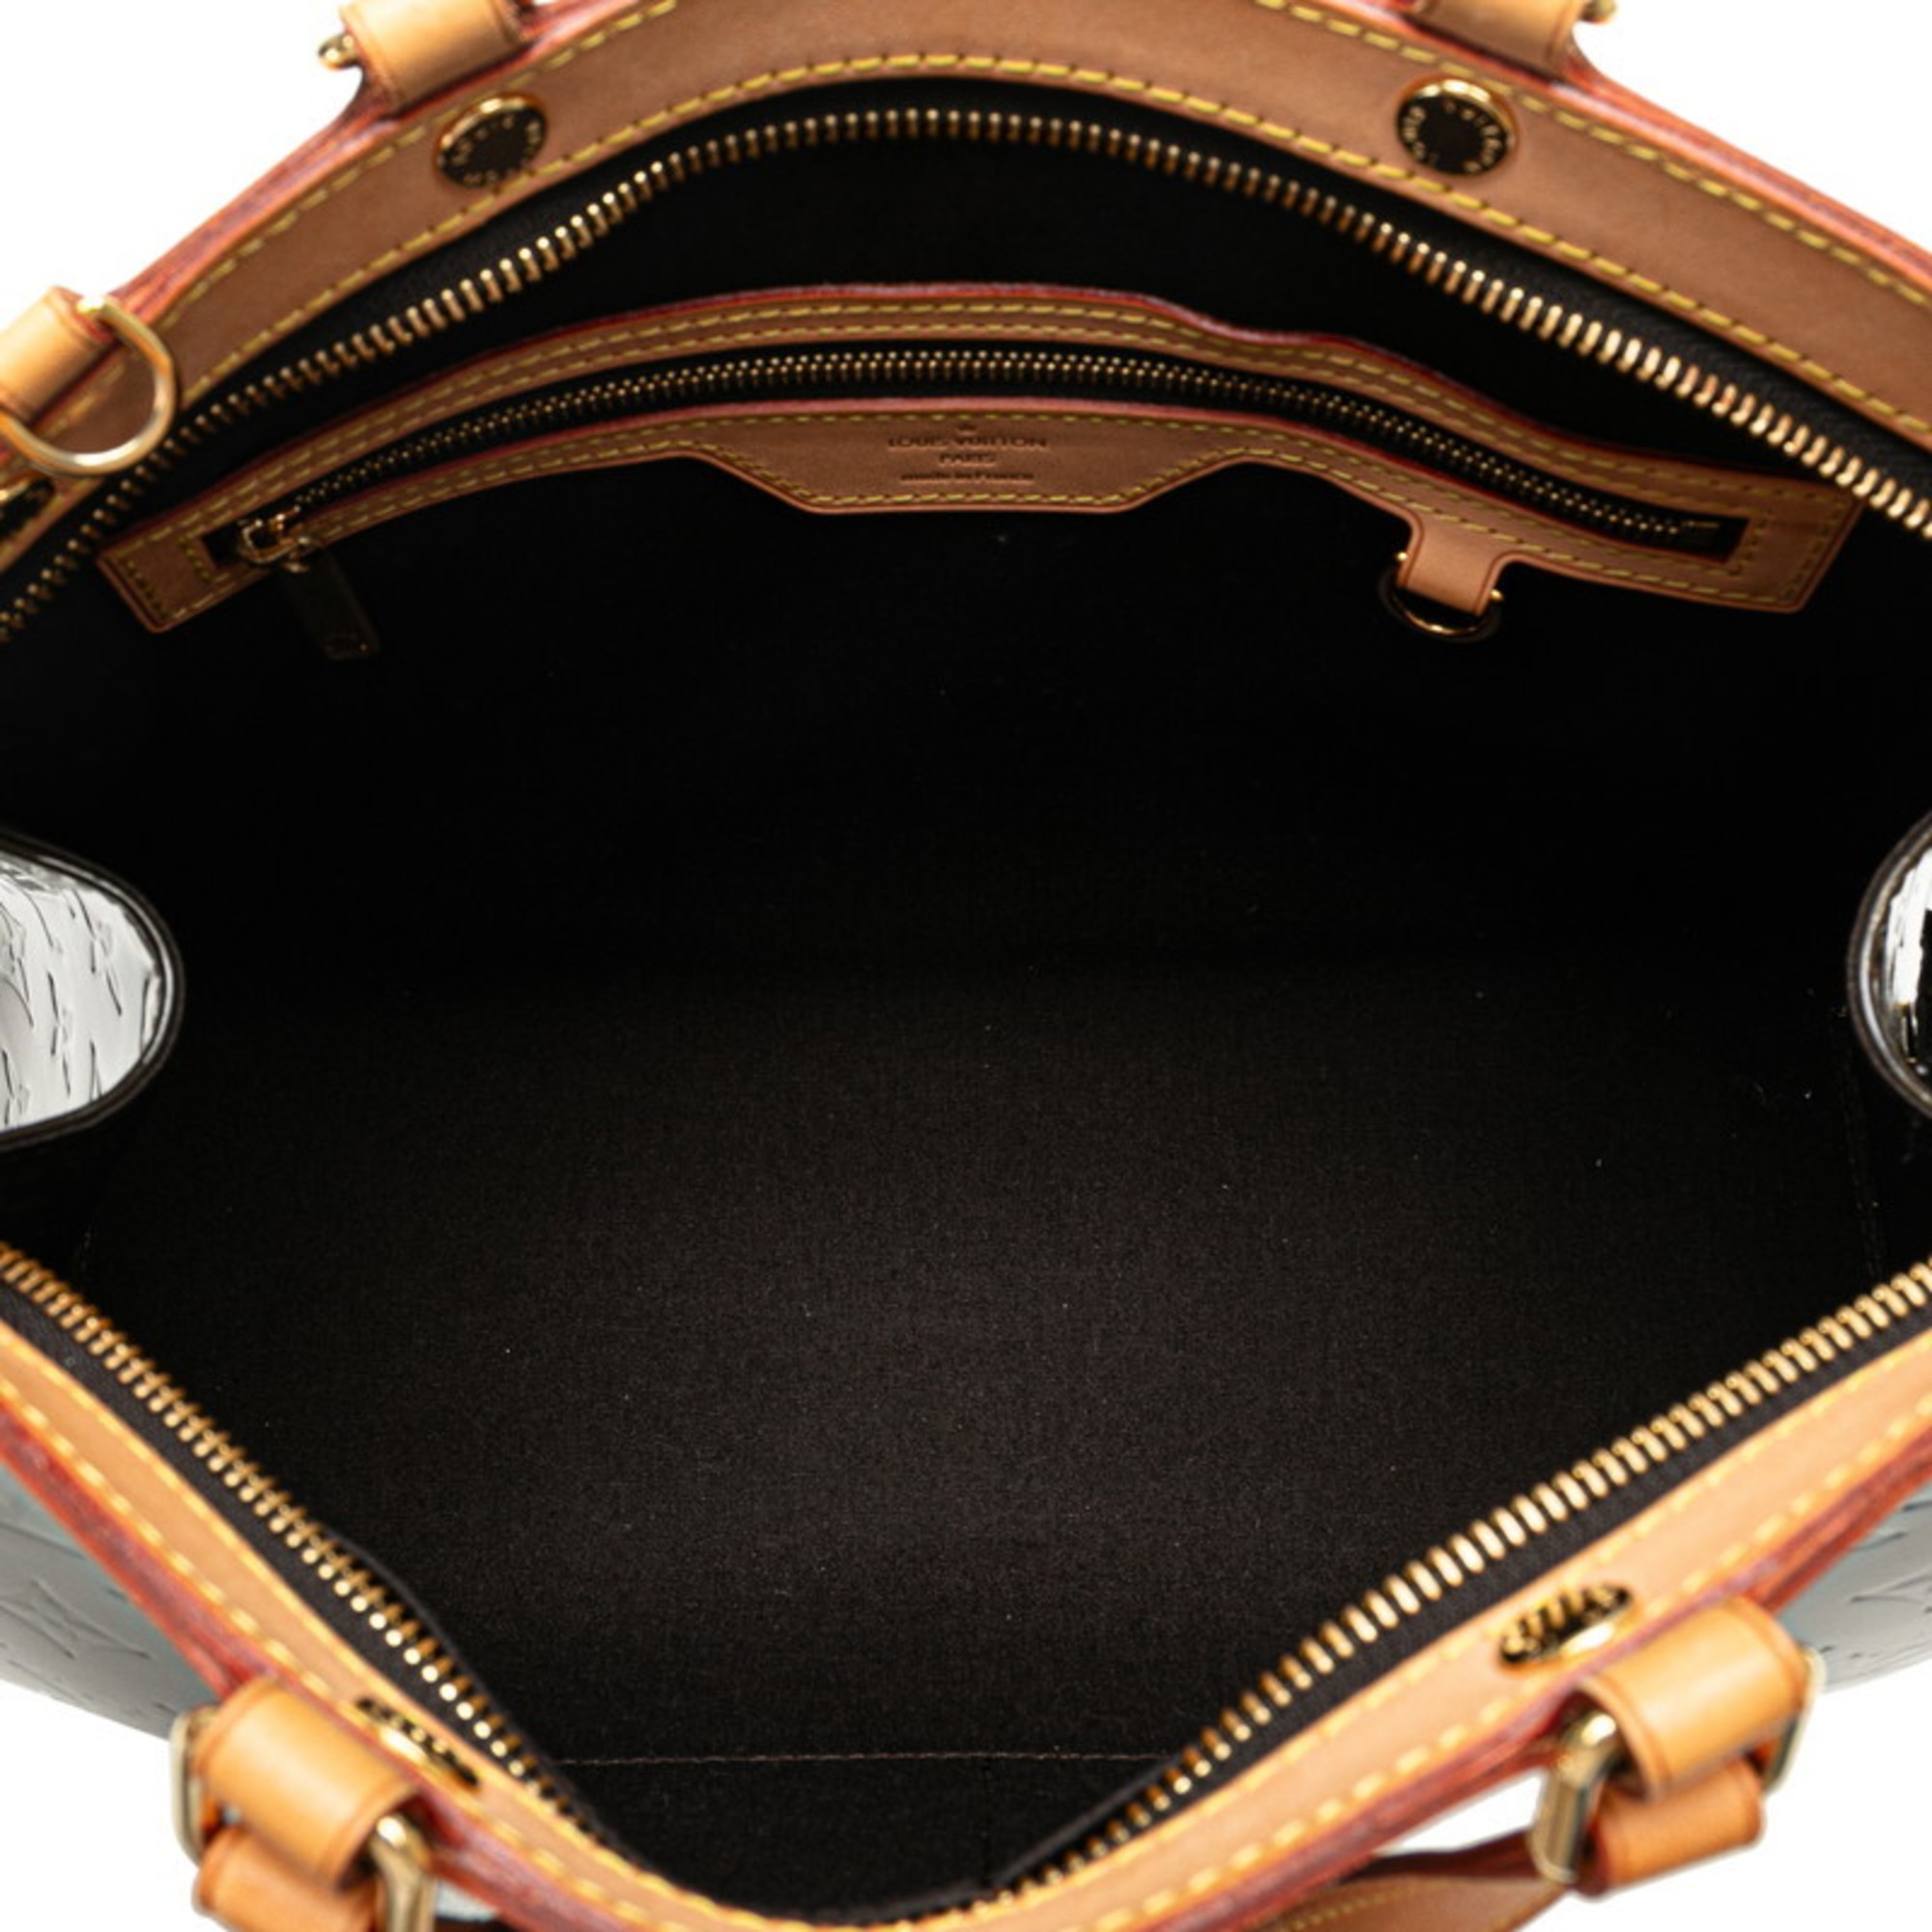 Louis Vuitton Monogram Vernis MM Handbag Shoulder Bag M91619 Amaranth Purple Patent Leather Women's LOUIS VUITTON